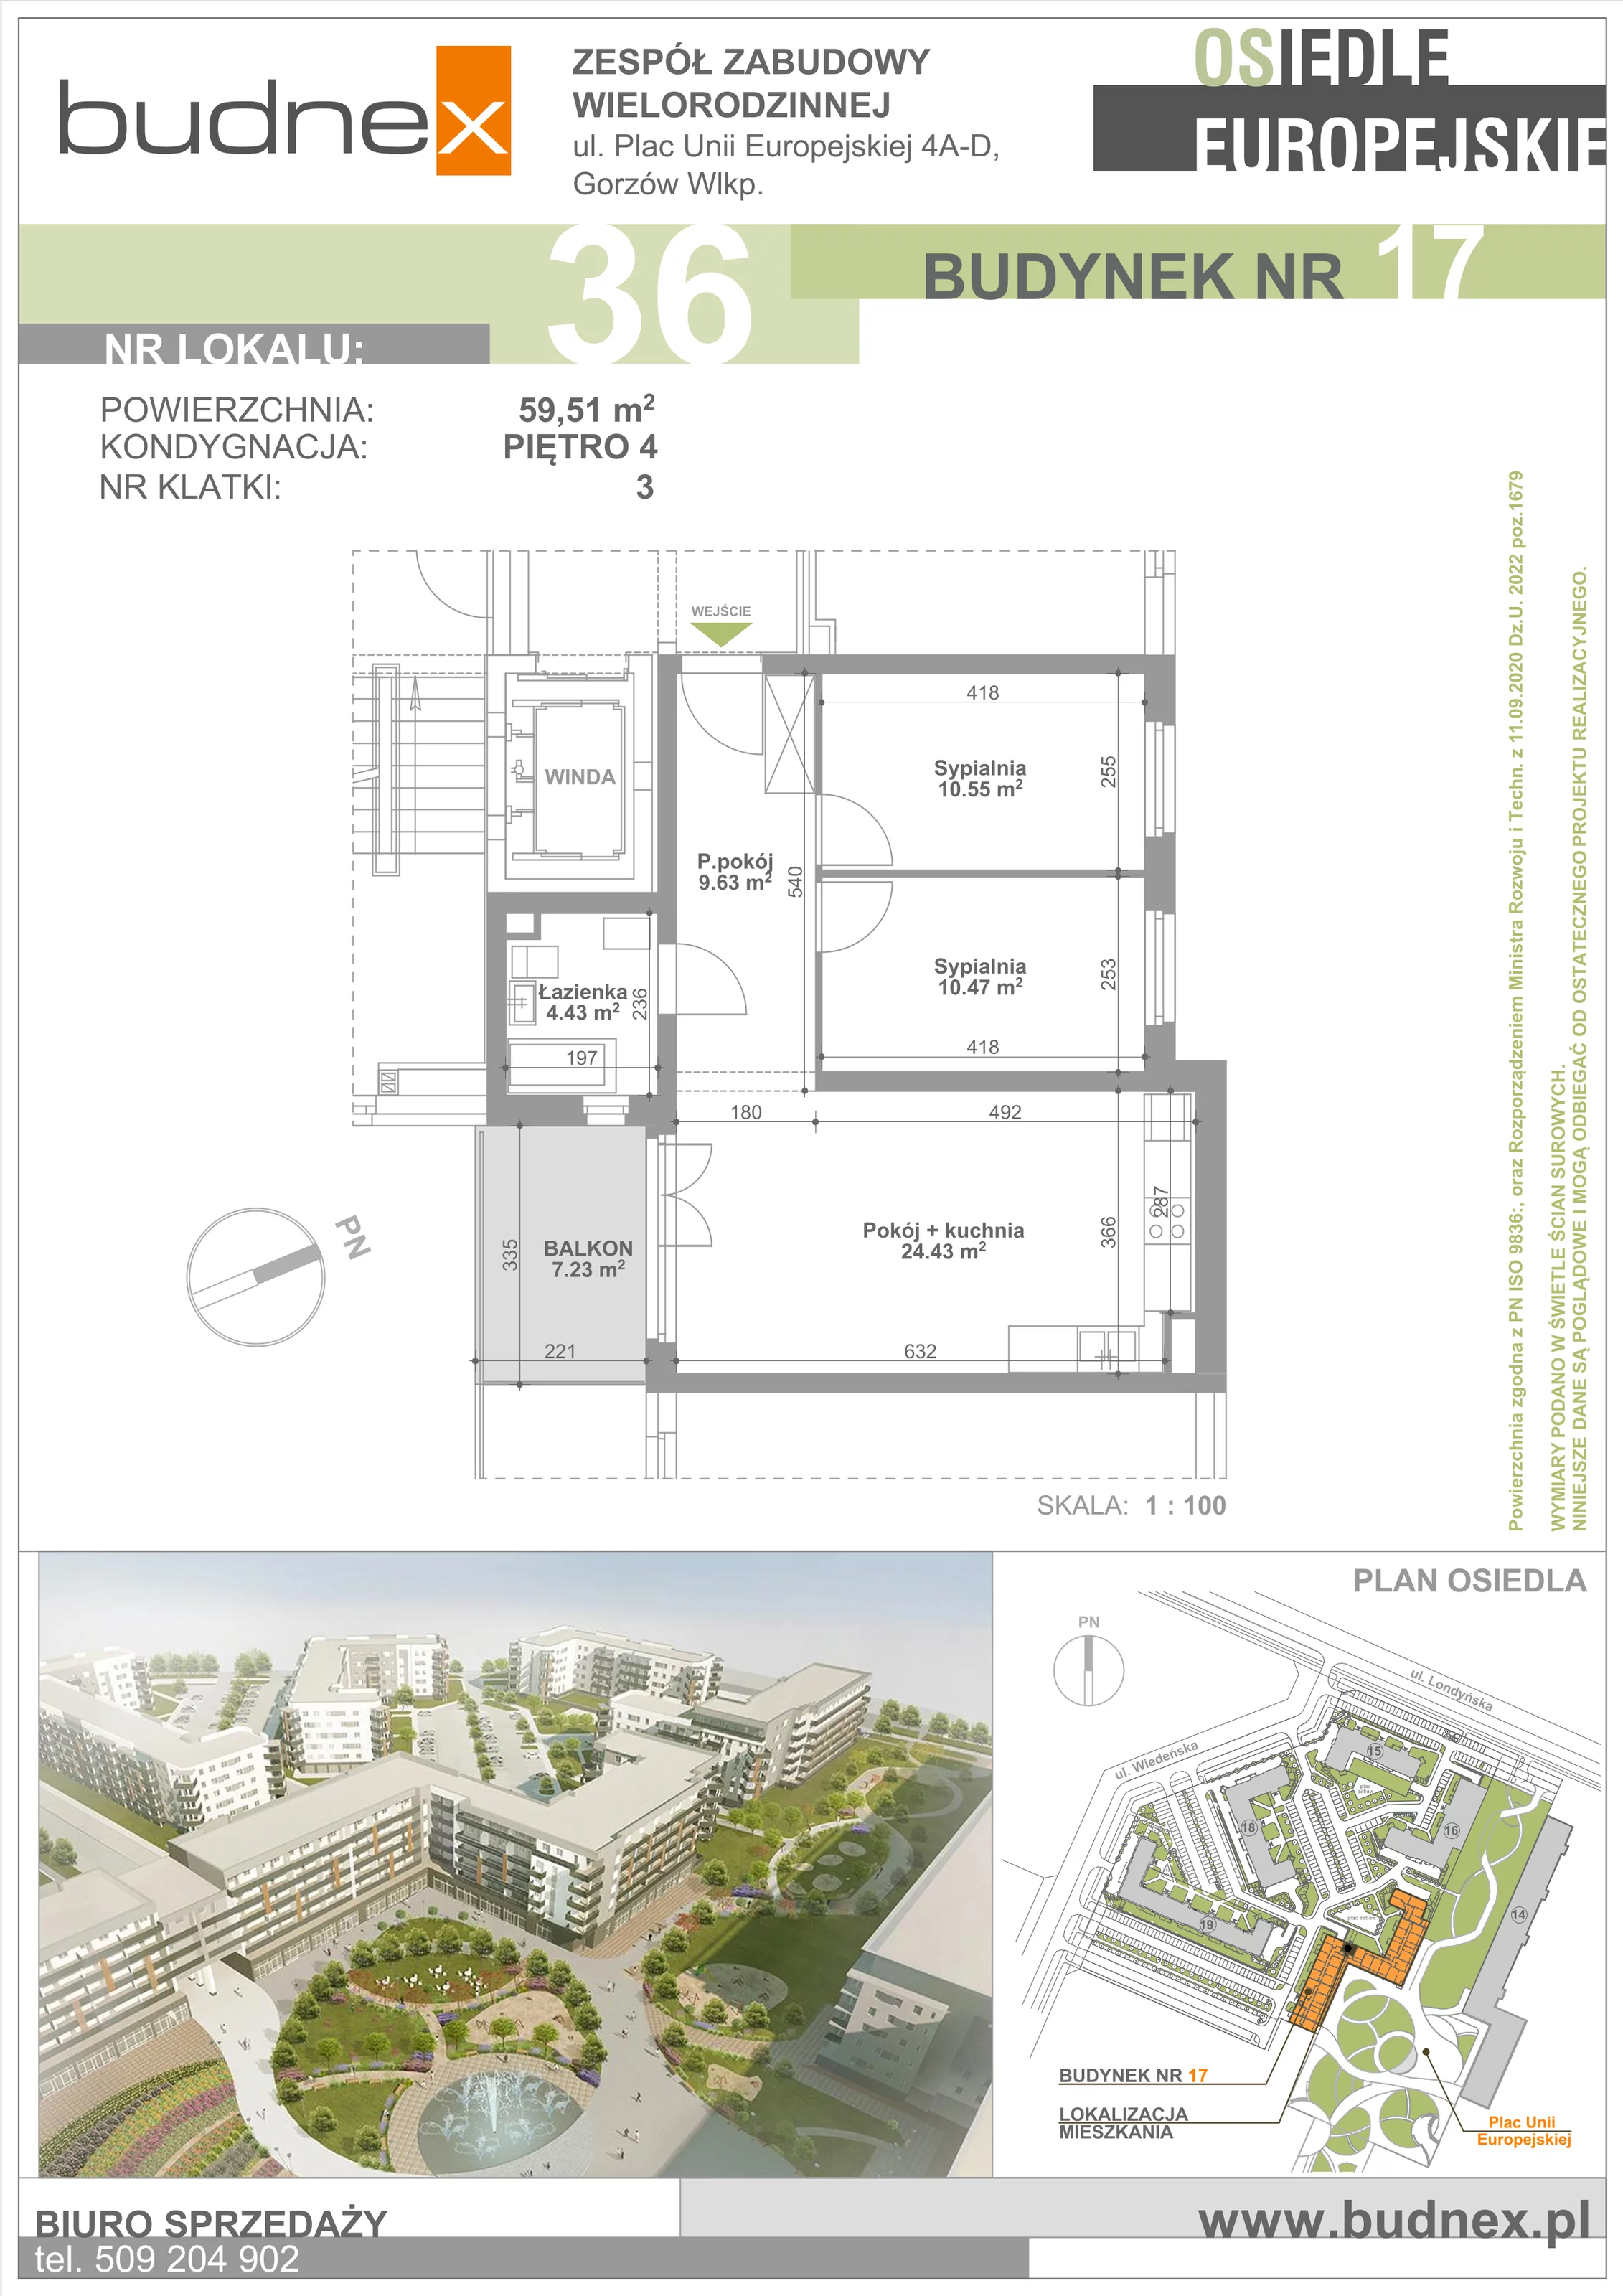 Mieszkanie 59,51 m², piętro 4, oferta nr 3/M36, Osiedle Europejskie - Budynek 17, Gorzów Wielkopolski, Plac Unii Europejskiej 4A-D